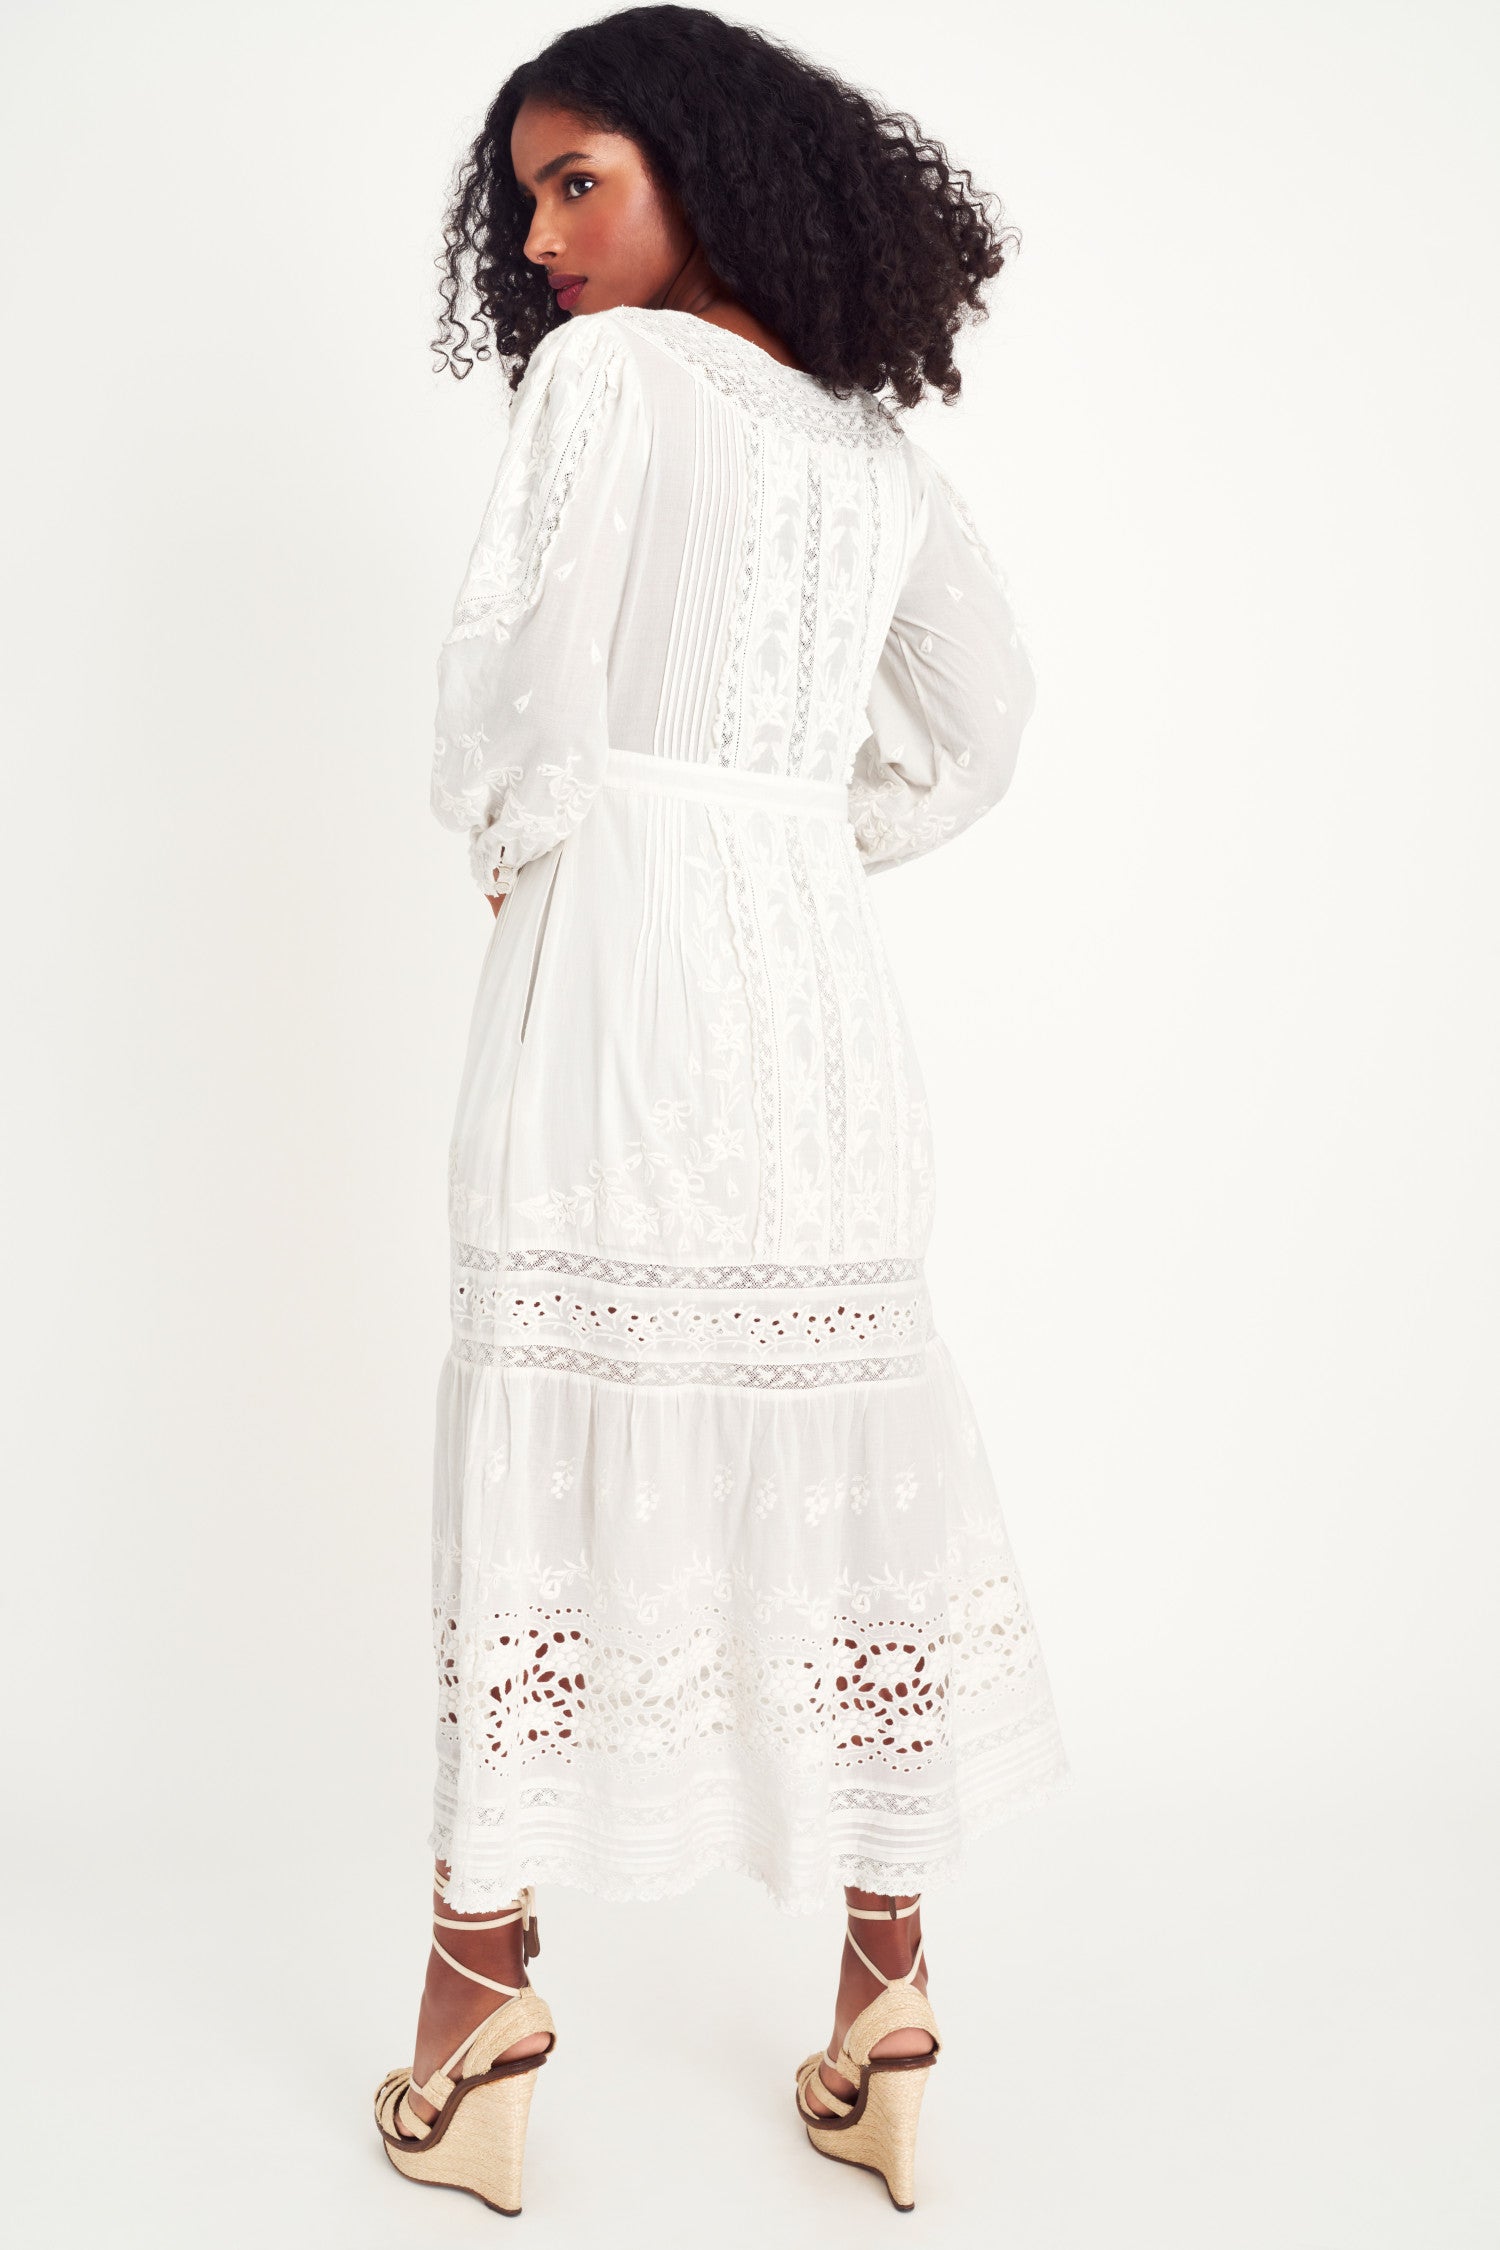 Back image of model wearing white maxi dress